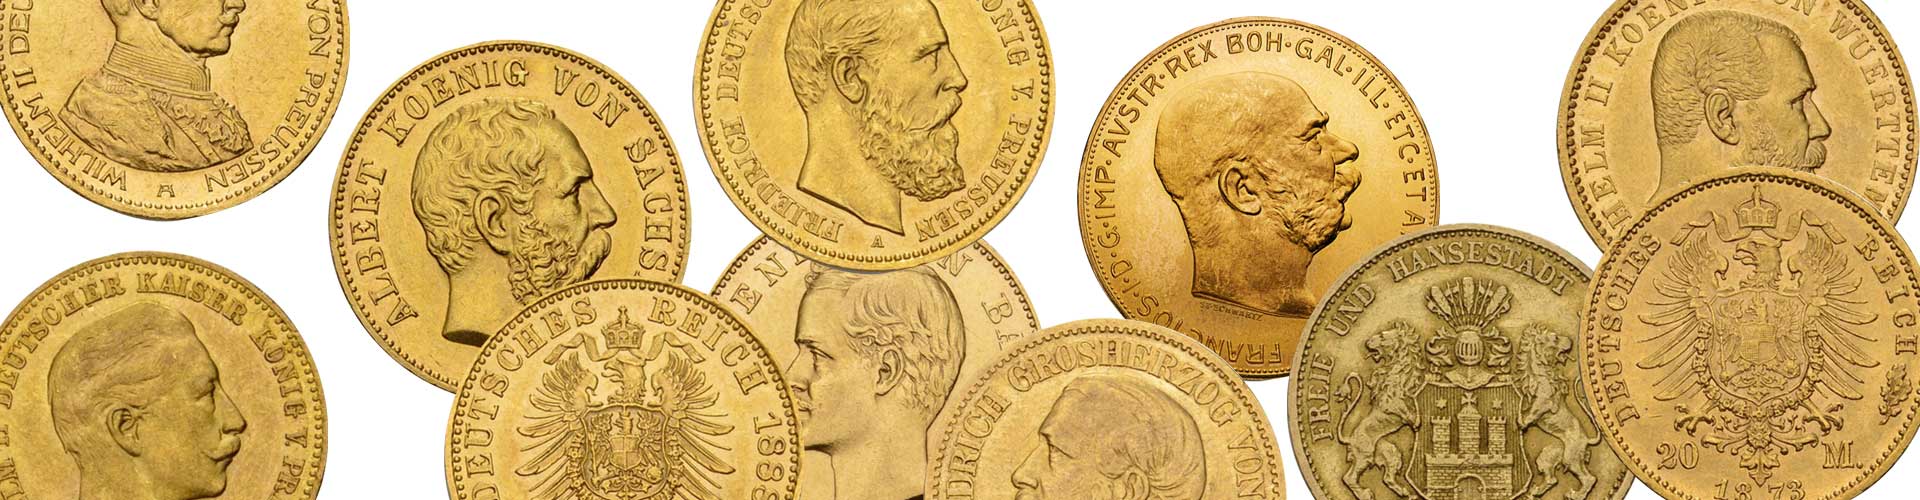 Sammlermünzen aus Gold